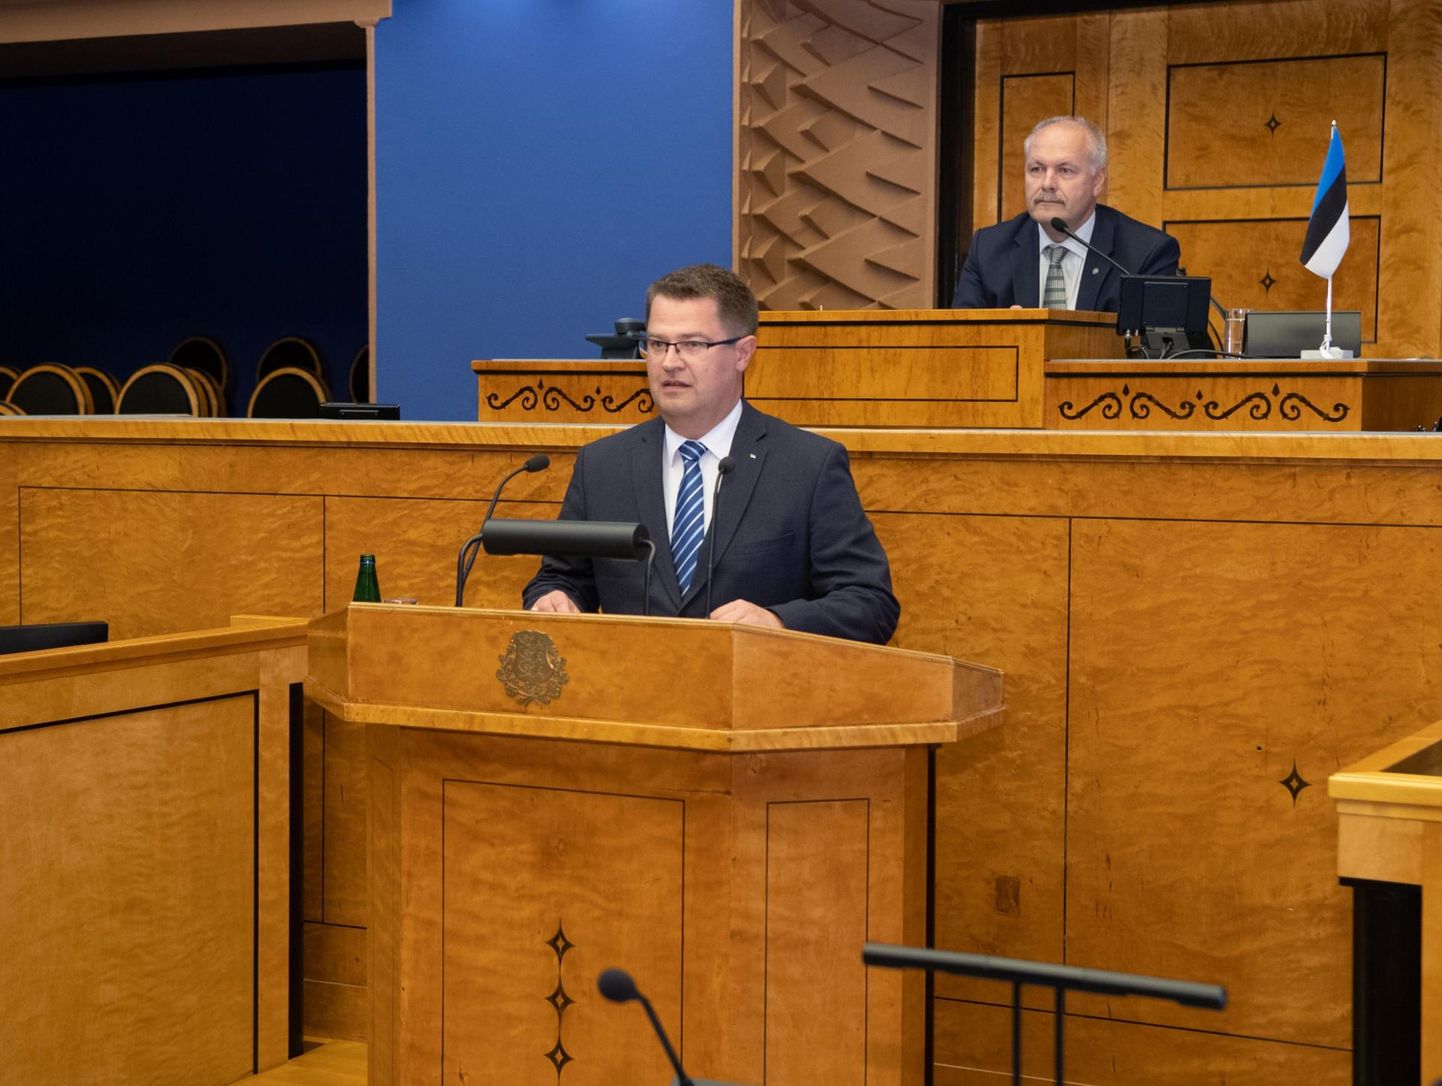 Kahtlemata on haridusvaldkonnas palju asju, mille üle võime rahvana olla väga uhked, kõneles Marko Šorin oma sõnavõtus riigikogu täiskoguistungil eelmisel neljapäeval.